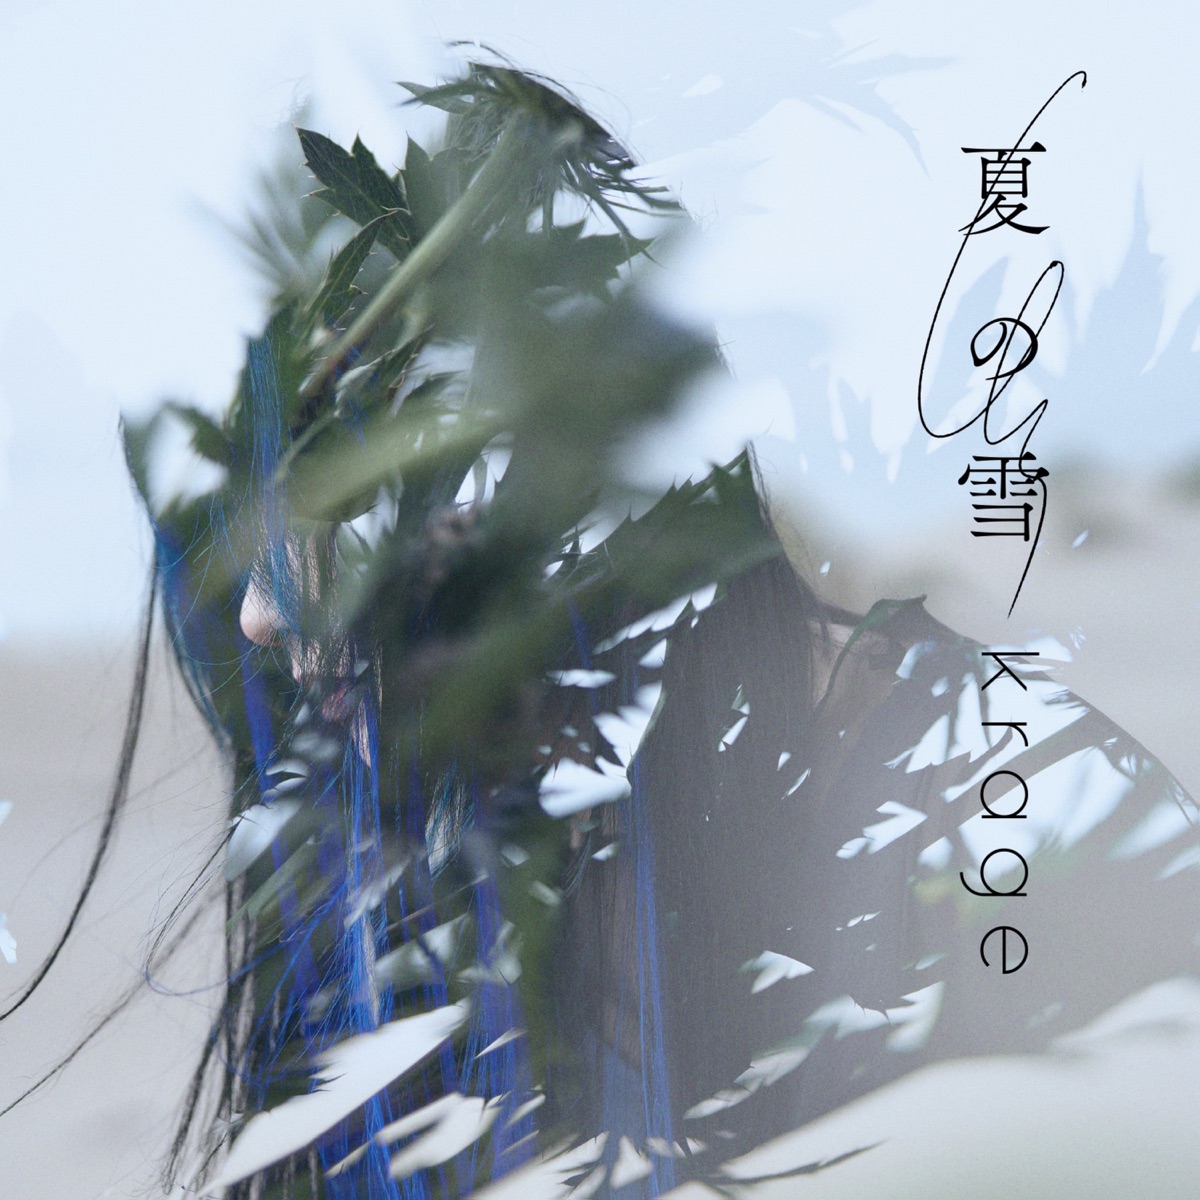 Cover art for『krage - Natsu no Yuki』from the release『Natsu no Yuki』